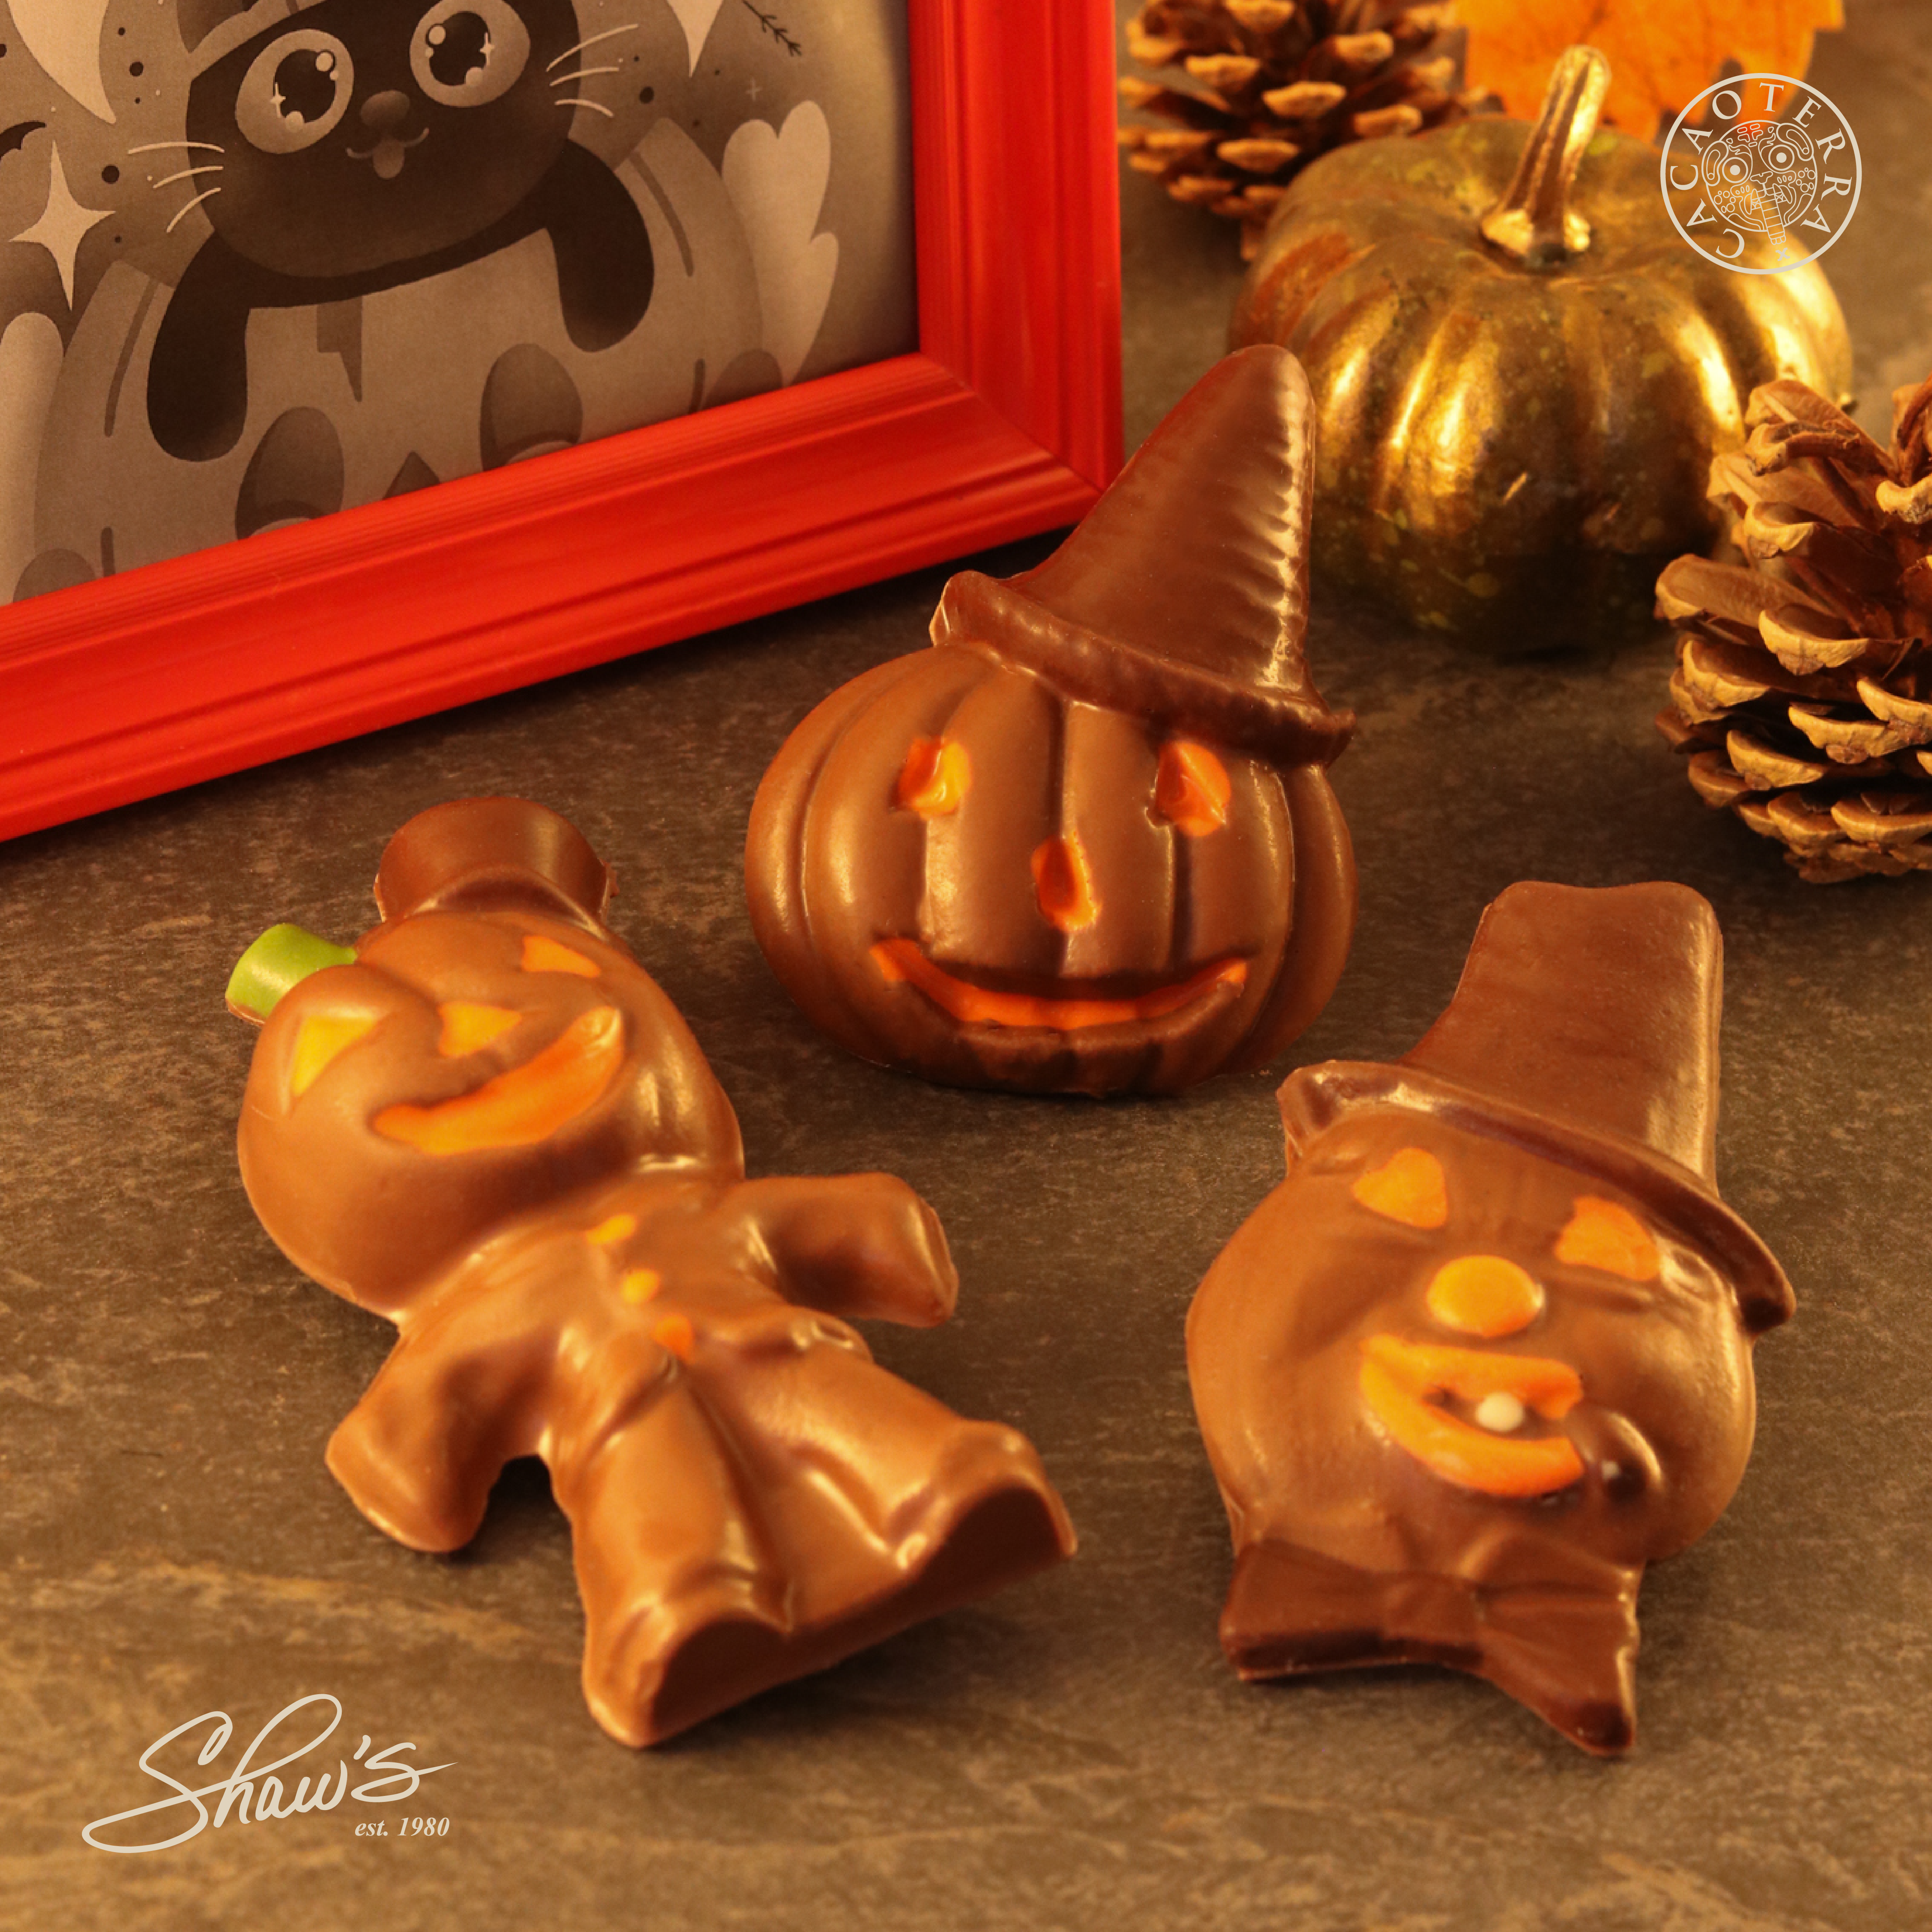 Chocolates – Happy Halloween!